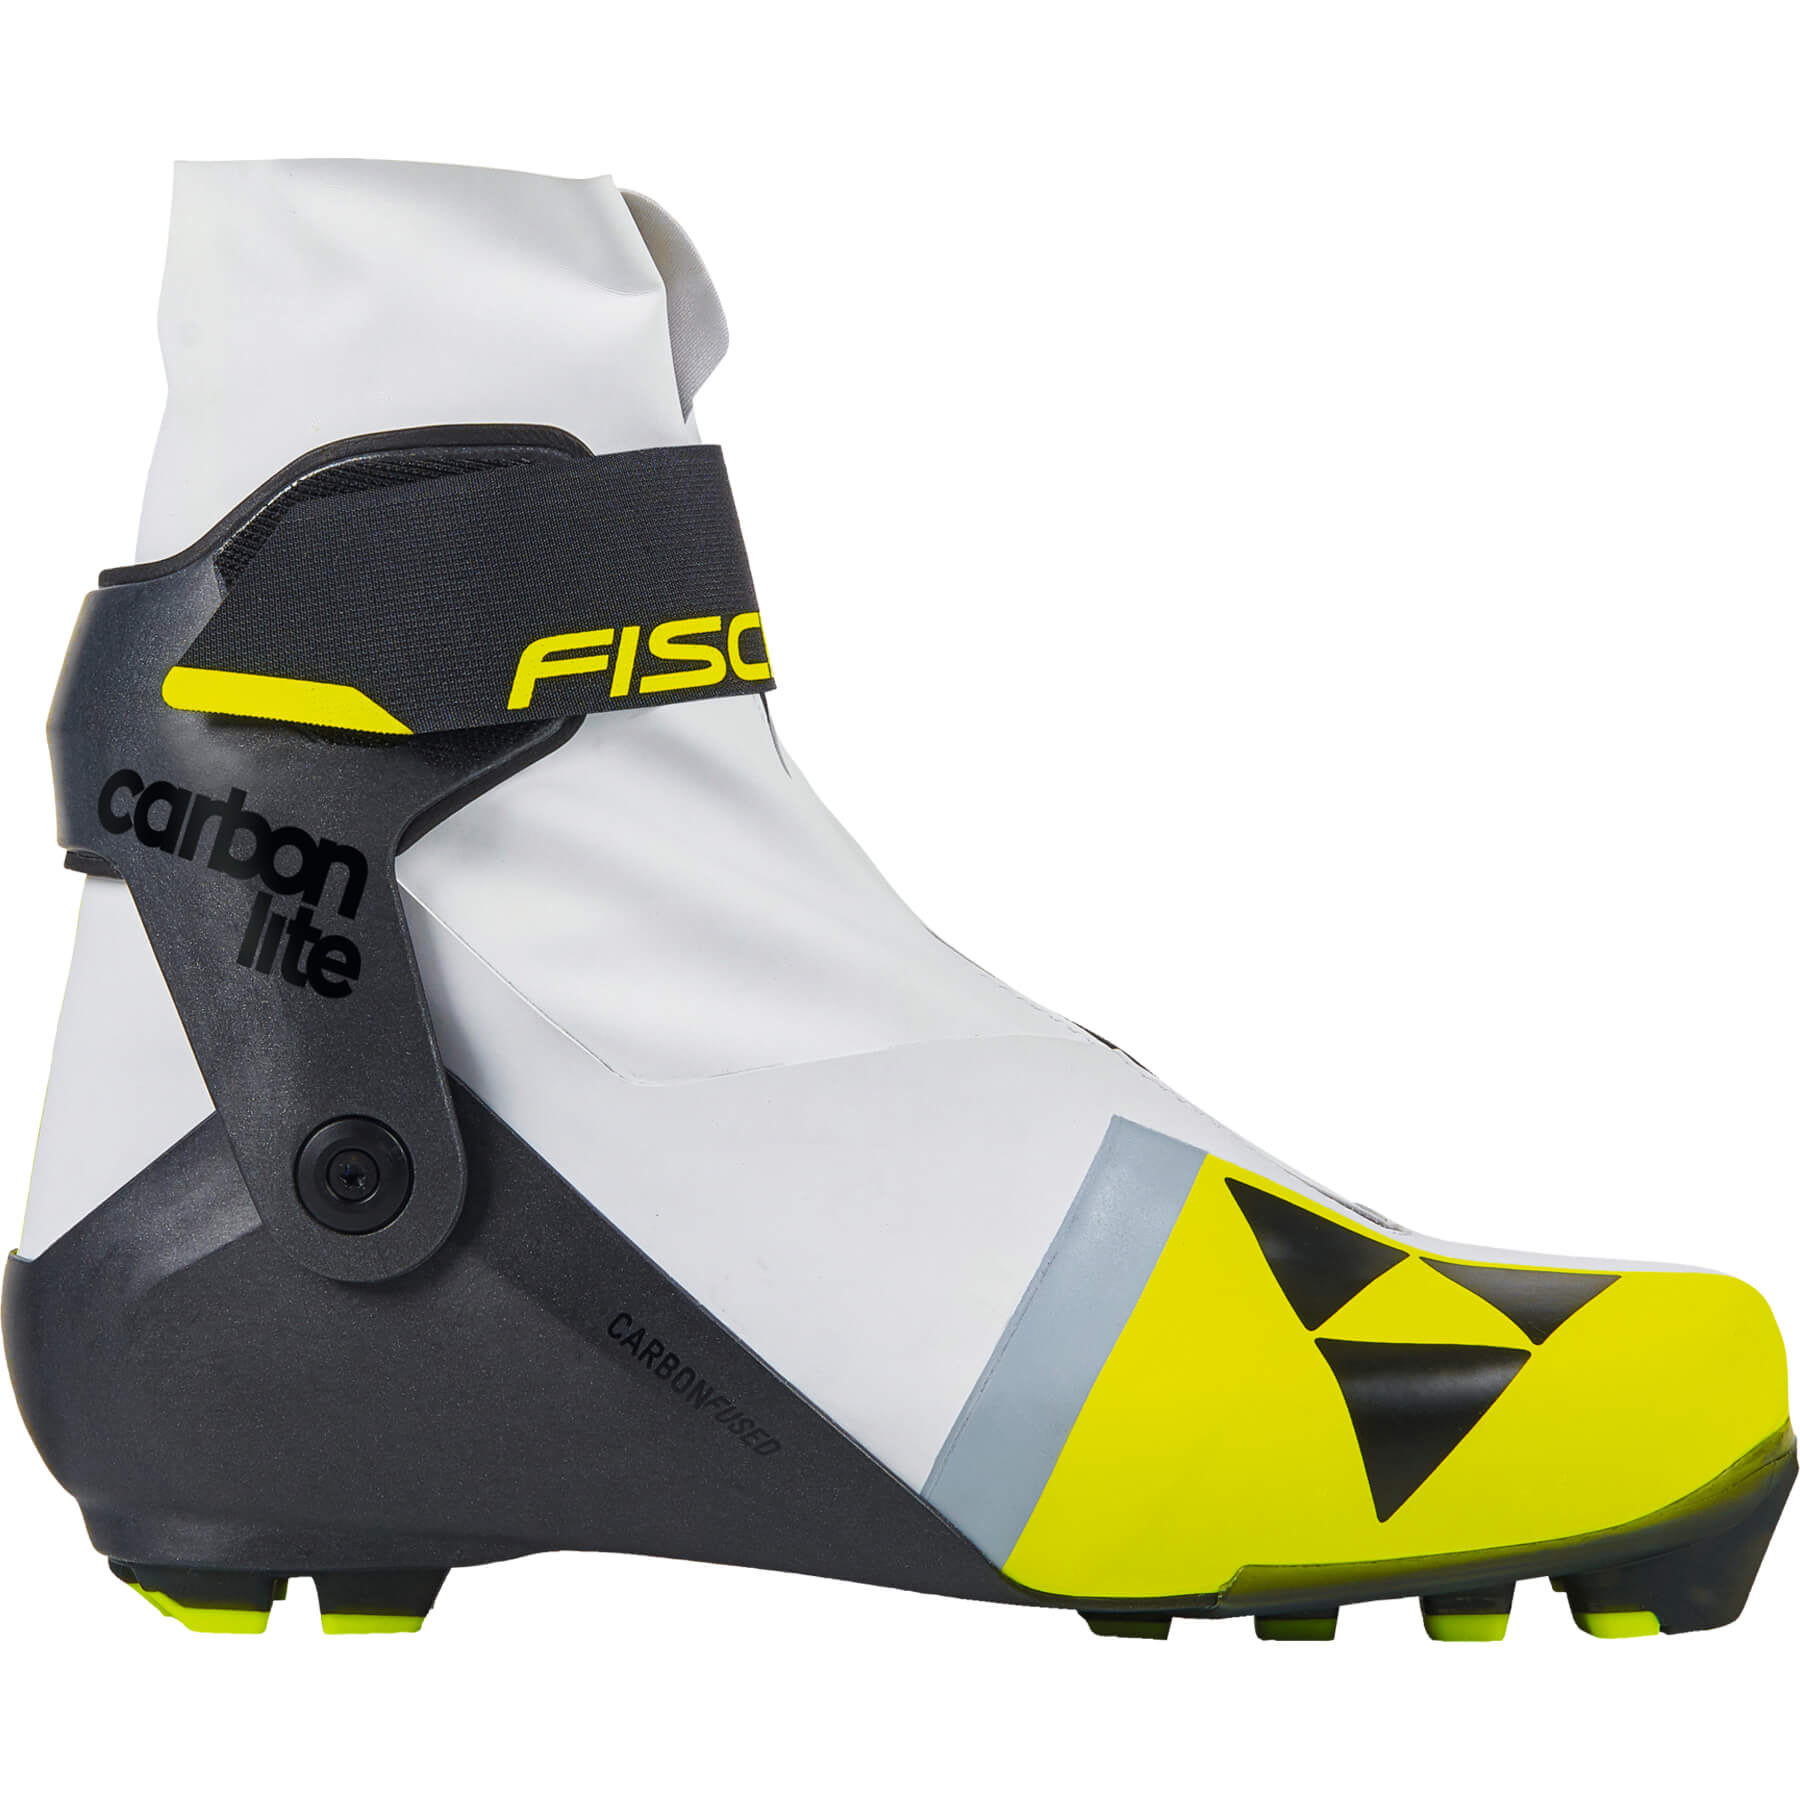 Fischer Carbonlite WS Skate Boot